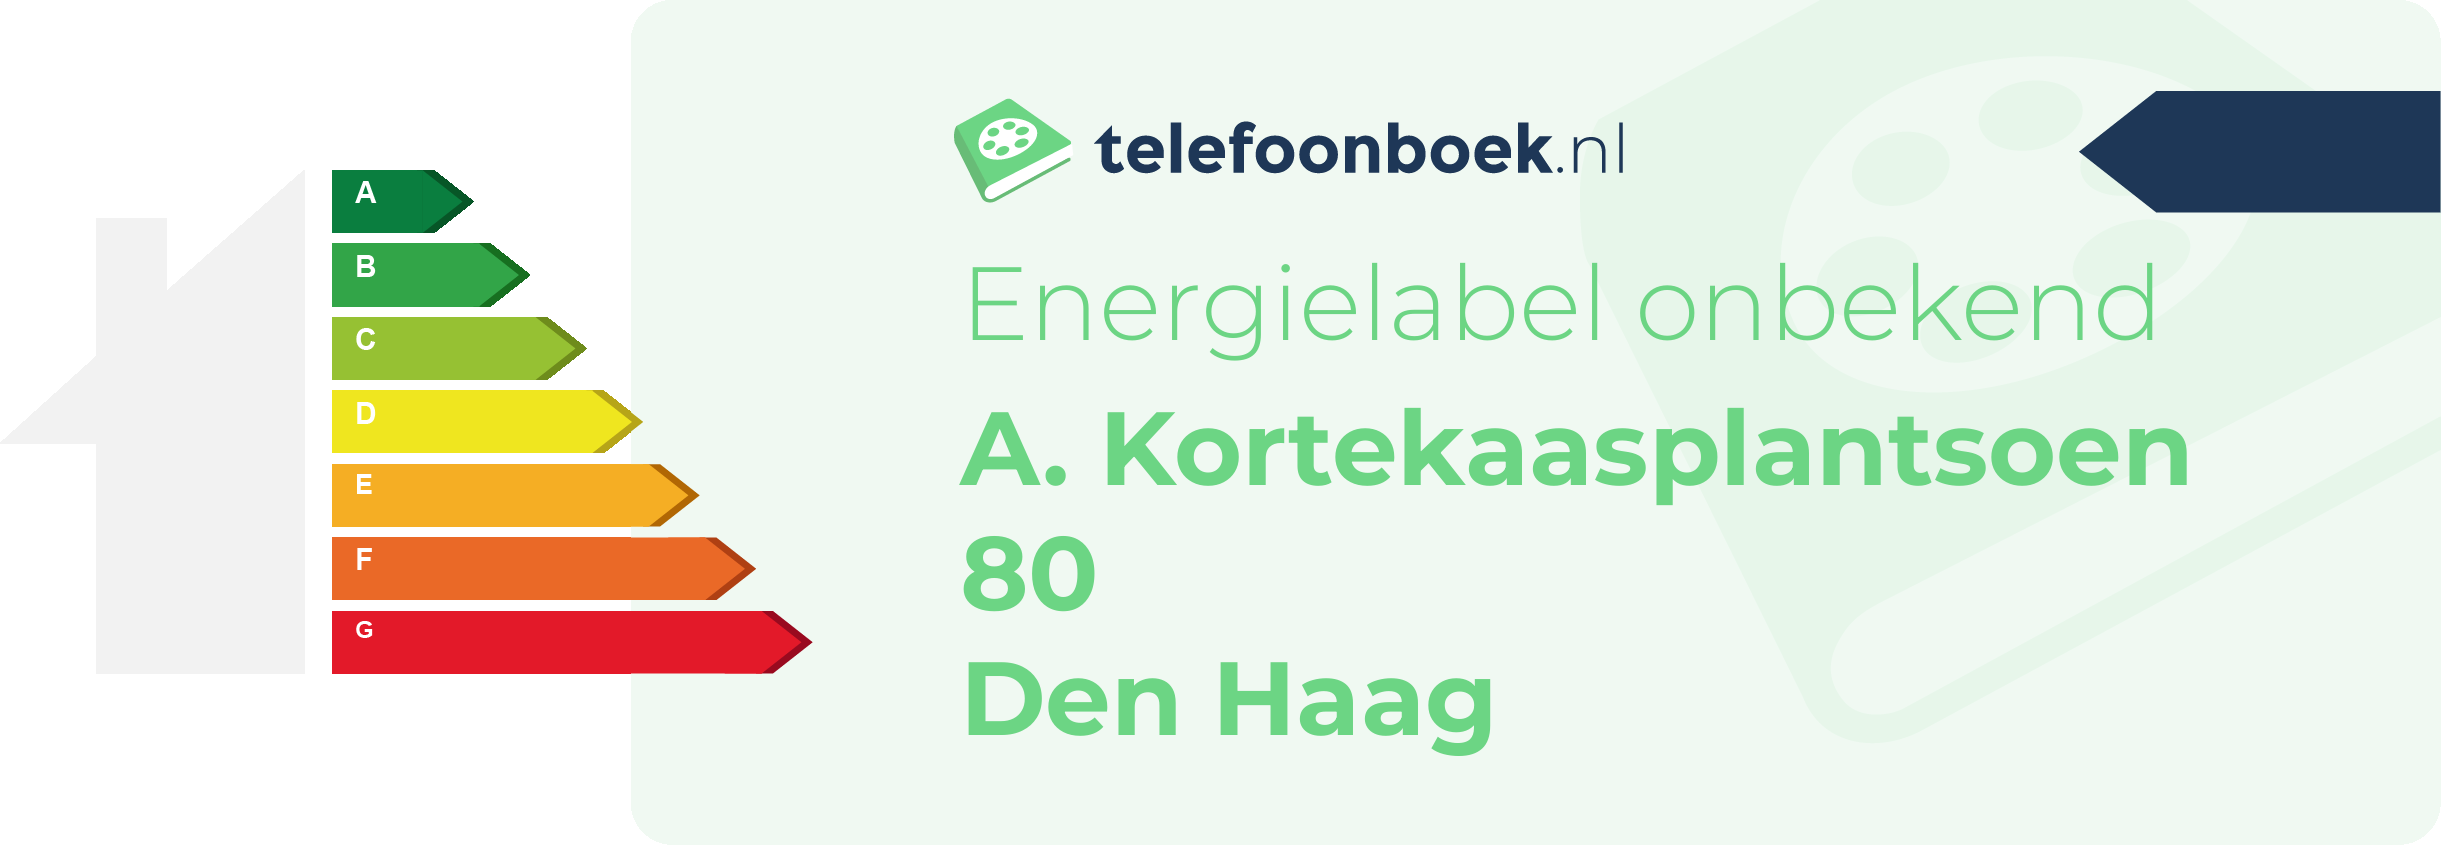 Energielabel A. Kortekaasplantsoen 80 Den Haag